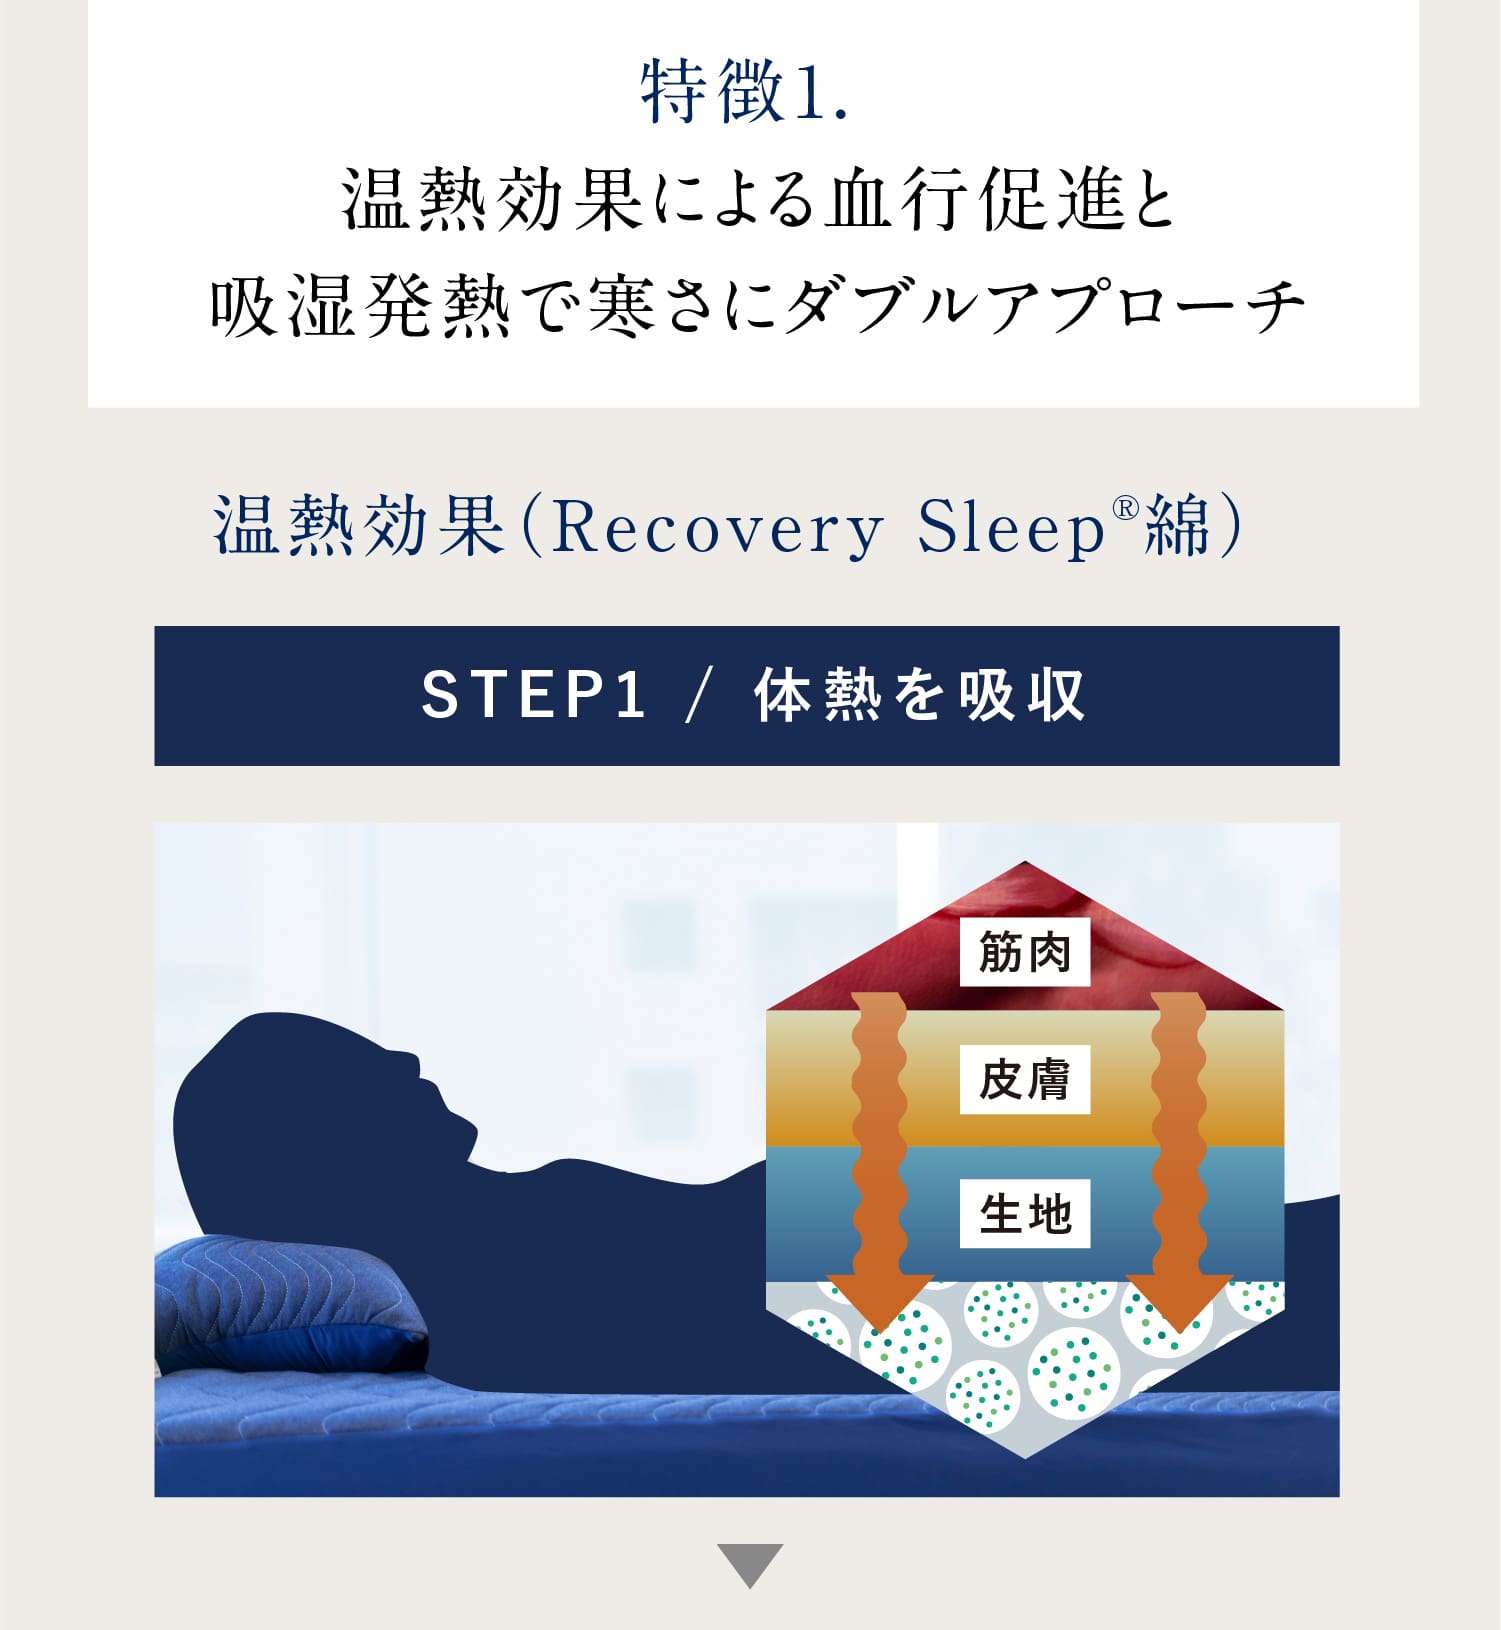 特徴1. 温熱効果による血行促進と吸湿発熱で寒さにダブルアプローチ 温熱効果（Recovery Sleep®綿） STEP1 / 体熱を吸収